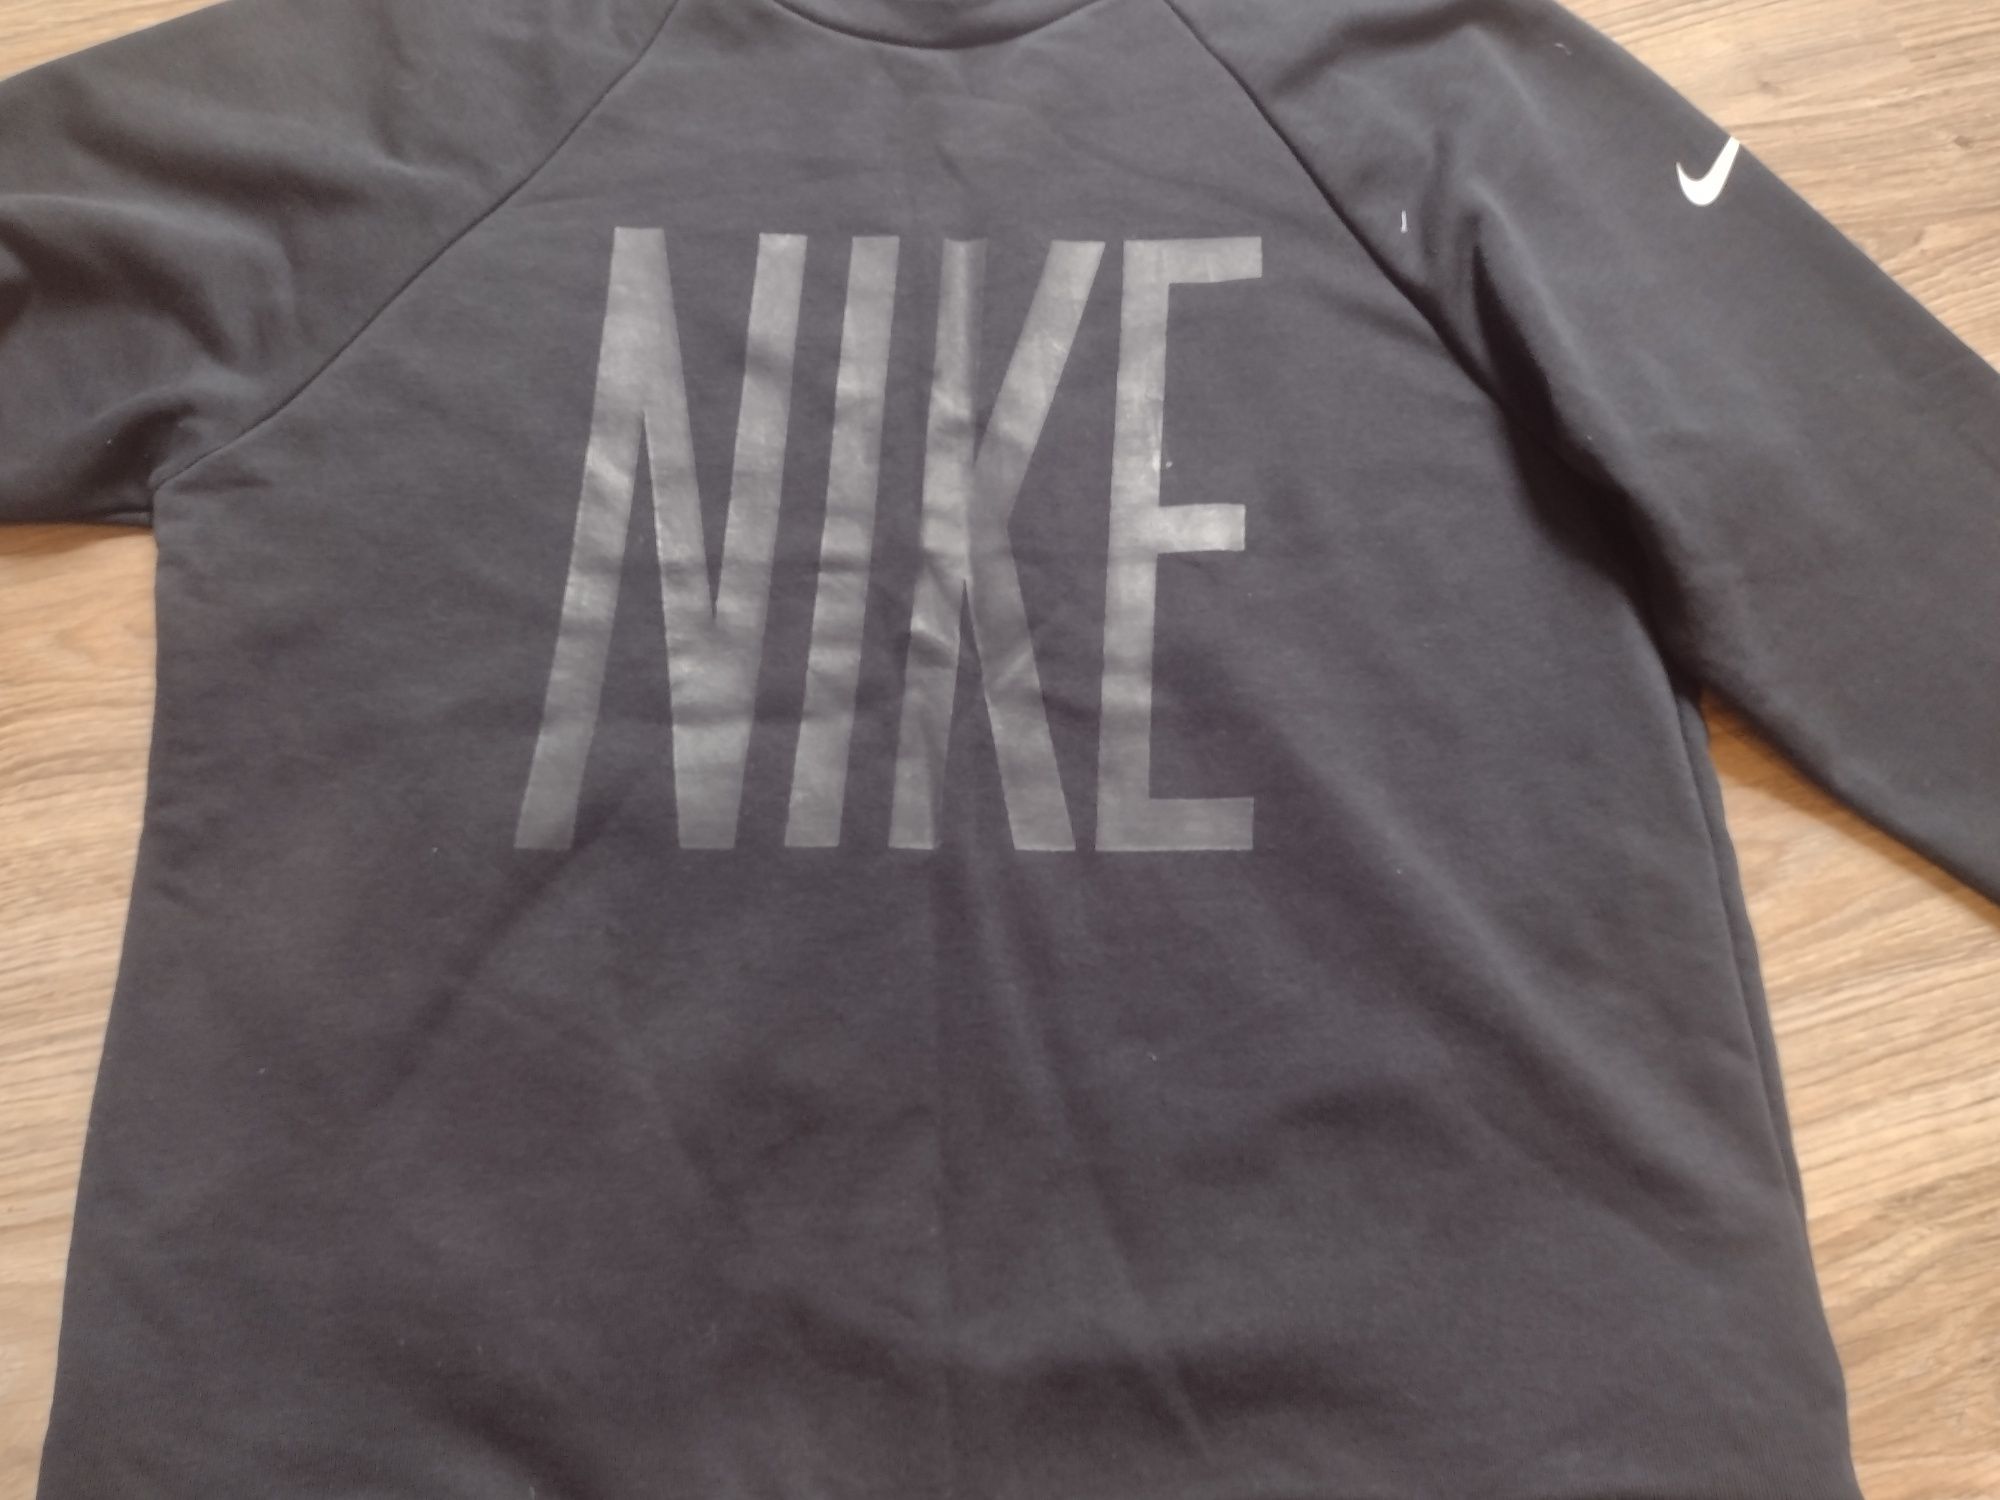 Bluza Nike rozmiar M